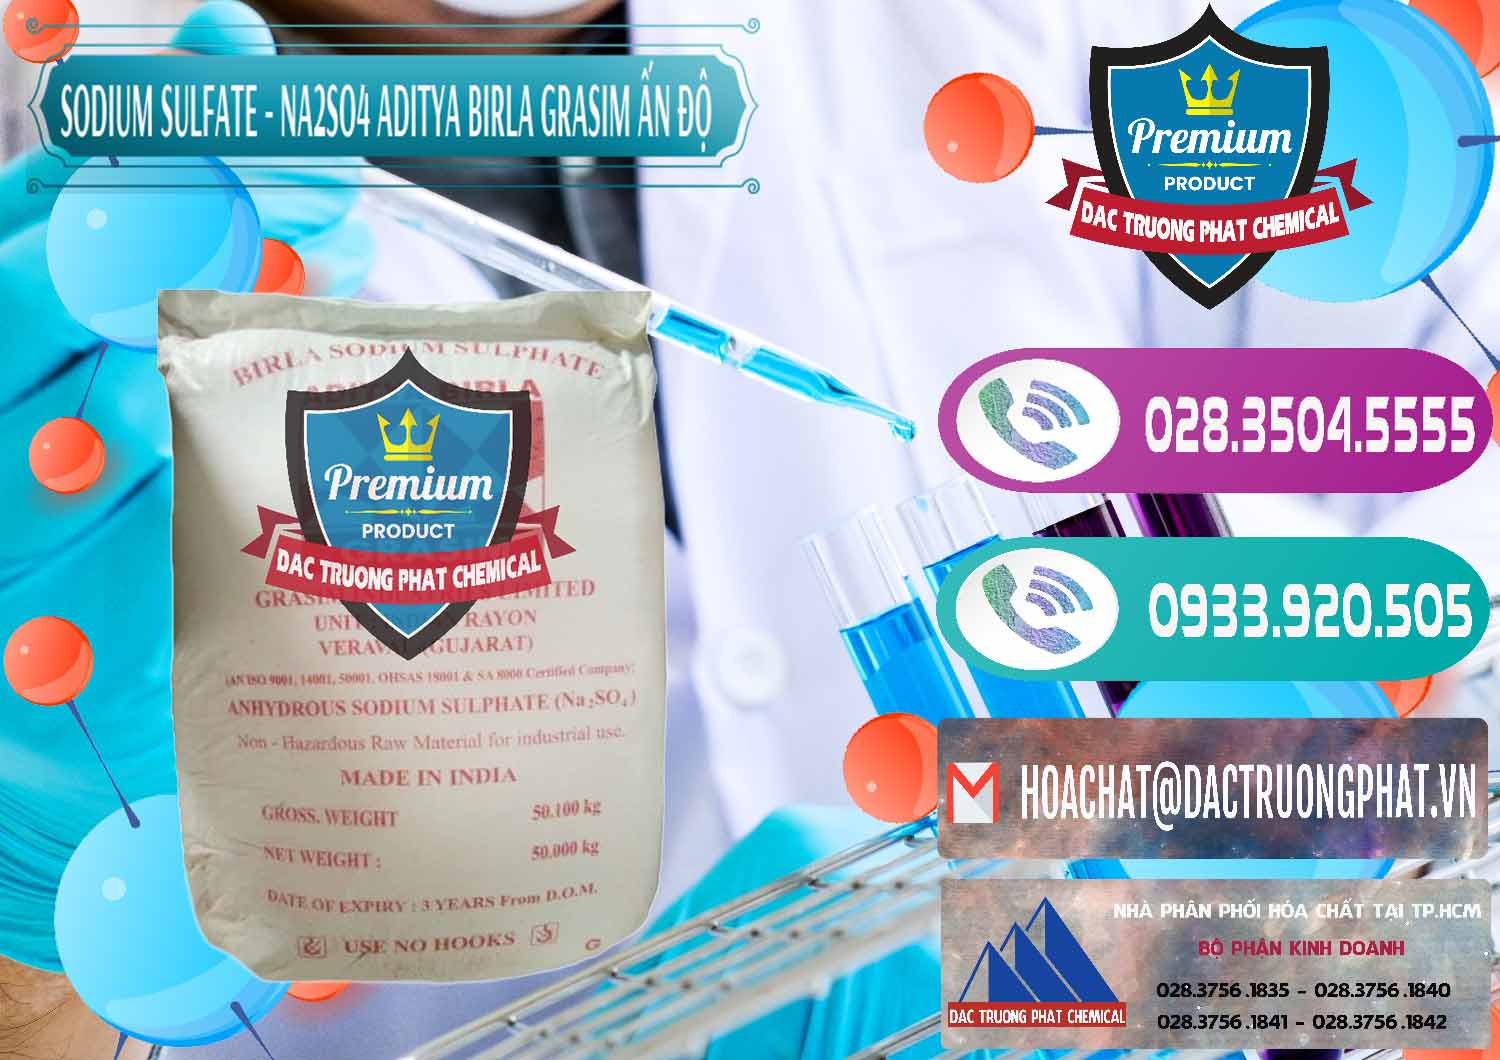 Công ty chuyên bán - cung cấp Sodium Sulphate - Muối Sunfat Na2SO4 Grasim Ấn Độ India - 0356 - Công ty nhập khẩu _ cung cấp hóa chất tại TP.HCM - hoachatxulynuoc.com